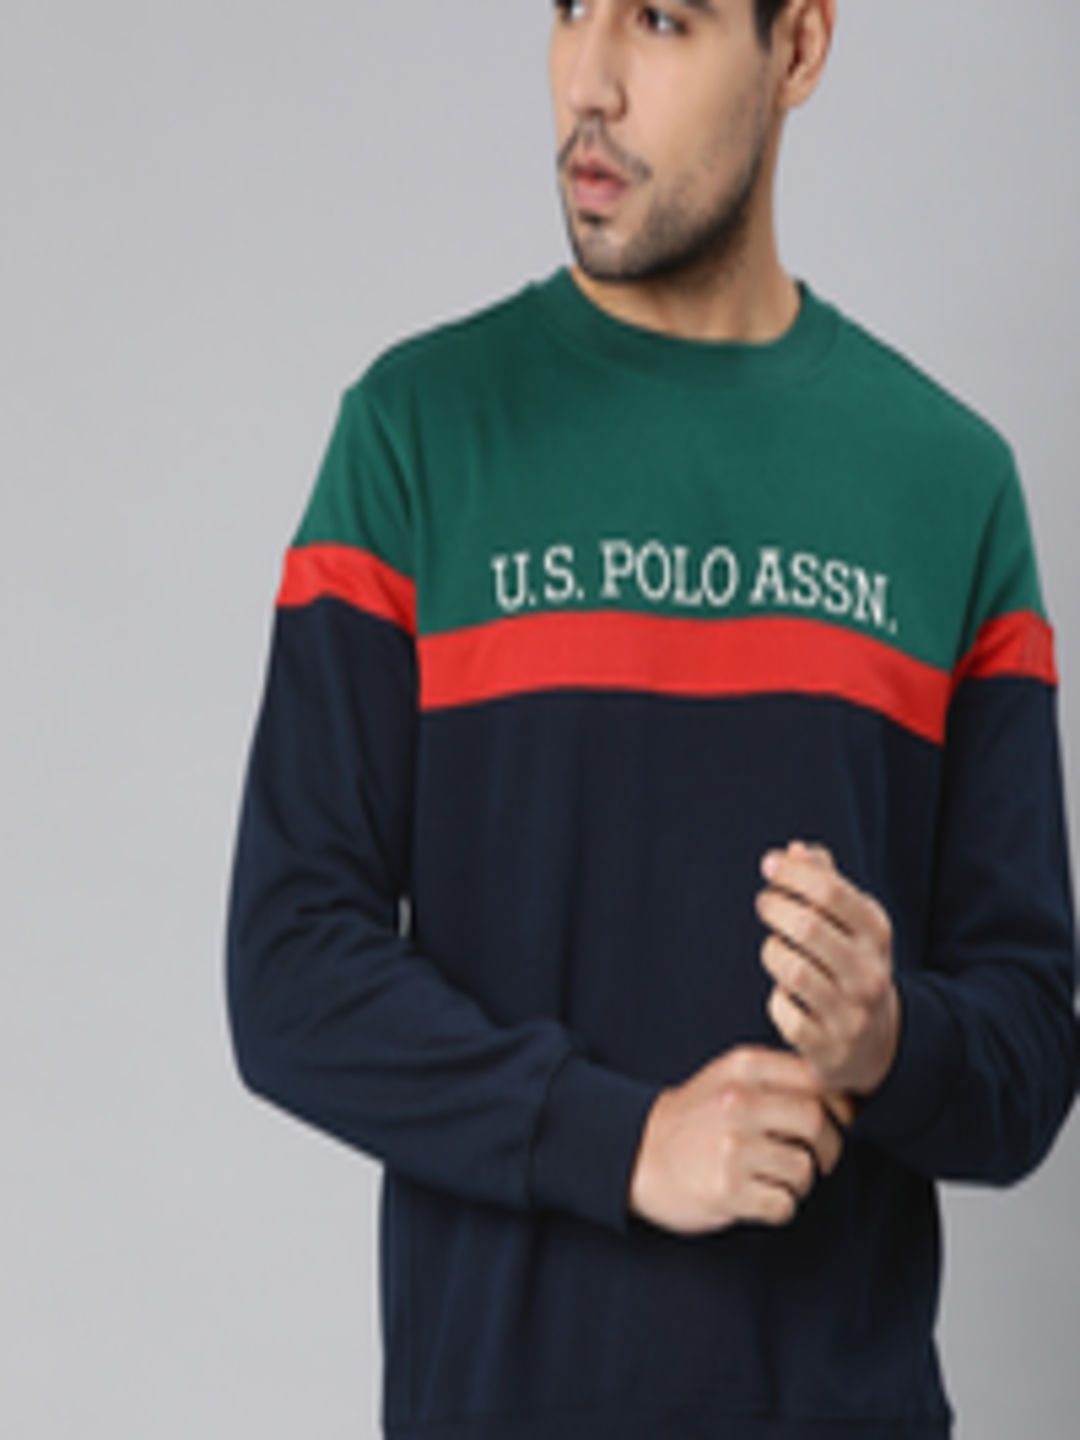 Buy U.S. Polo Assn. Men Navy Blue & Teal Green Colourblocked Pullover ...